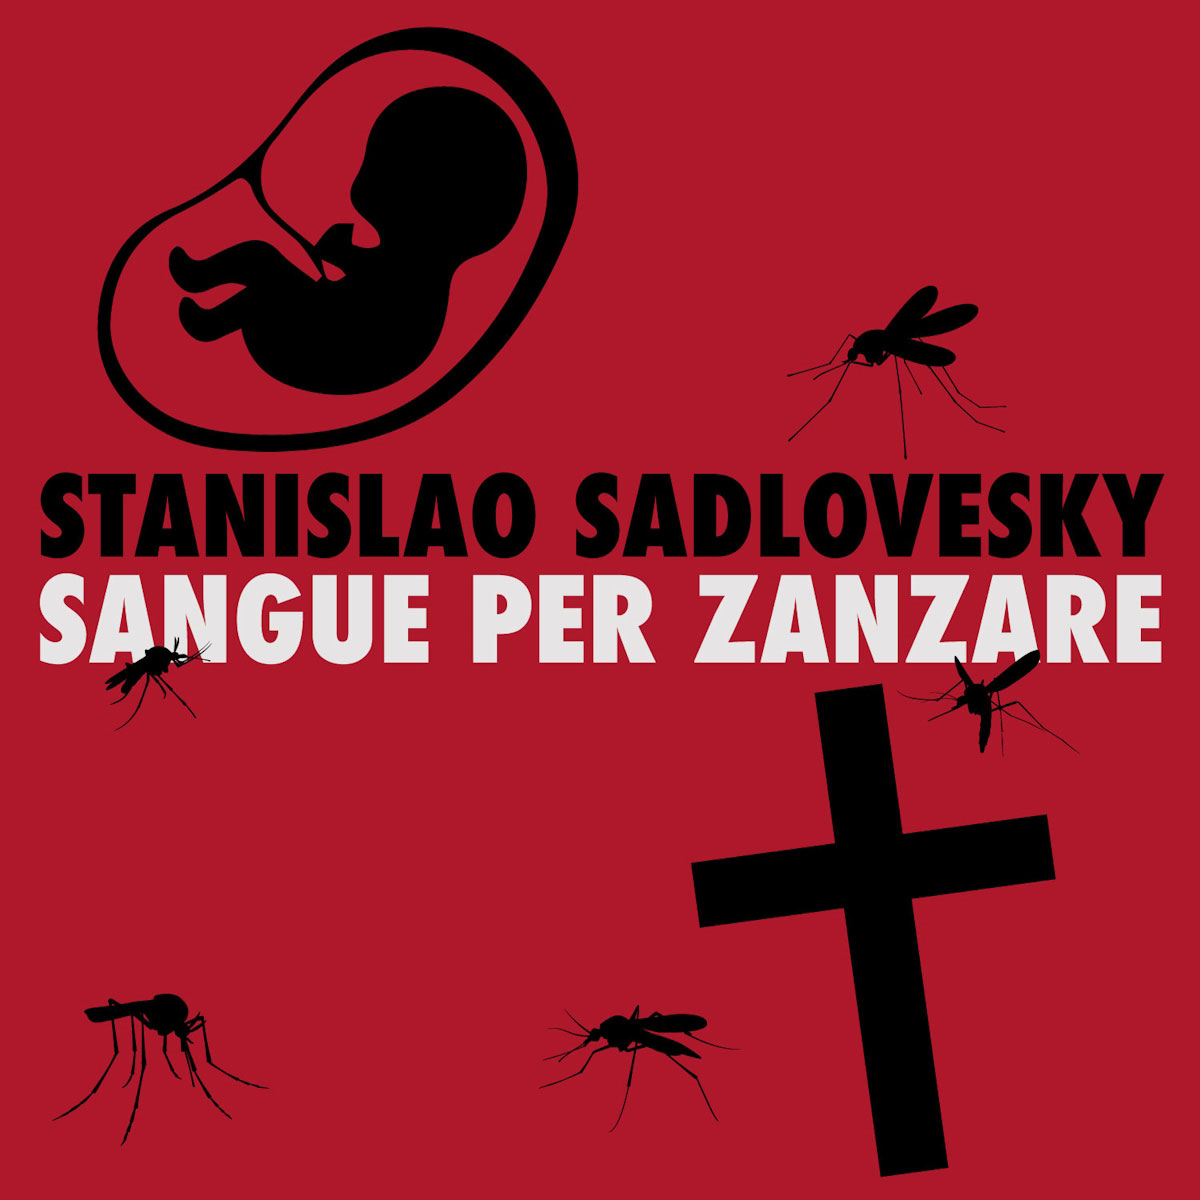 Stanislao Sadlovesky: disponibile il videoclip di “Sangue per Zanzare”